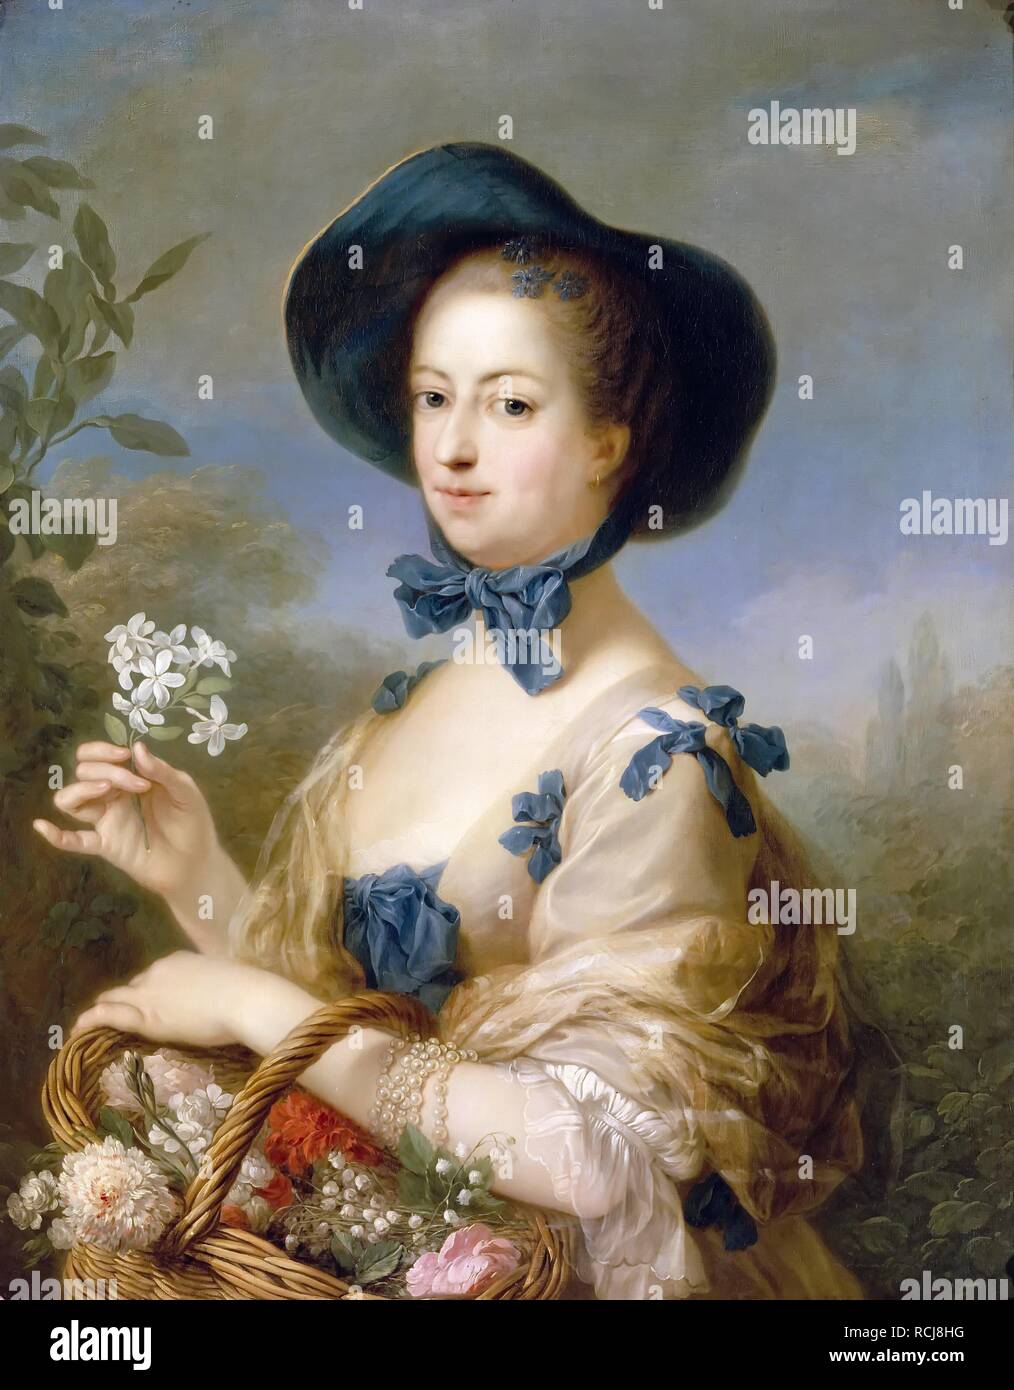 Jeanne-Antoinette Poisson, marquise de Pompadour (Belle Jardiniere). Museum: Musée de l'Histoire de France, Château de Versailles. Author: VAN LOO, CHARLES-ANDRE. Stock Photo